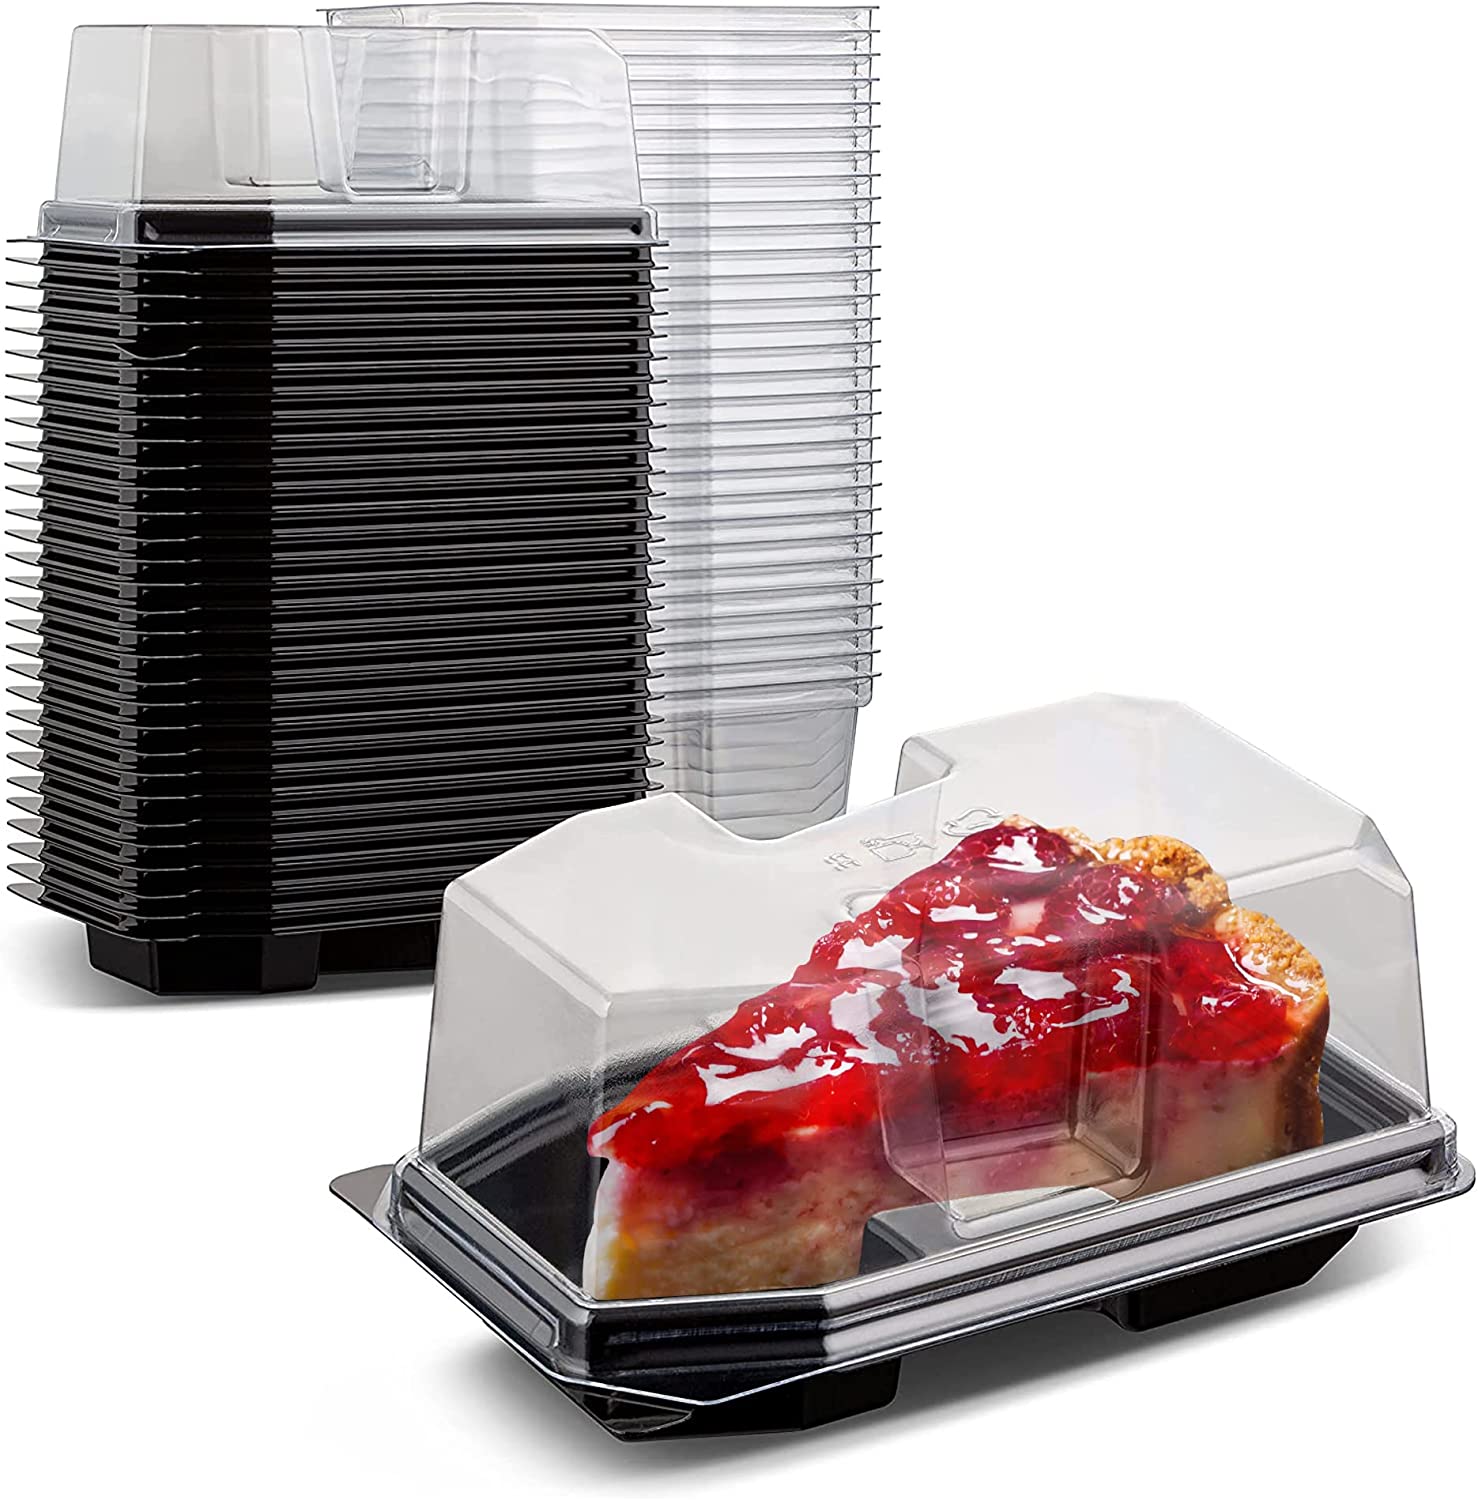 Pie & Cake Slice Container - Tamper Evident - 200/Case